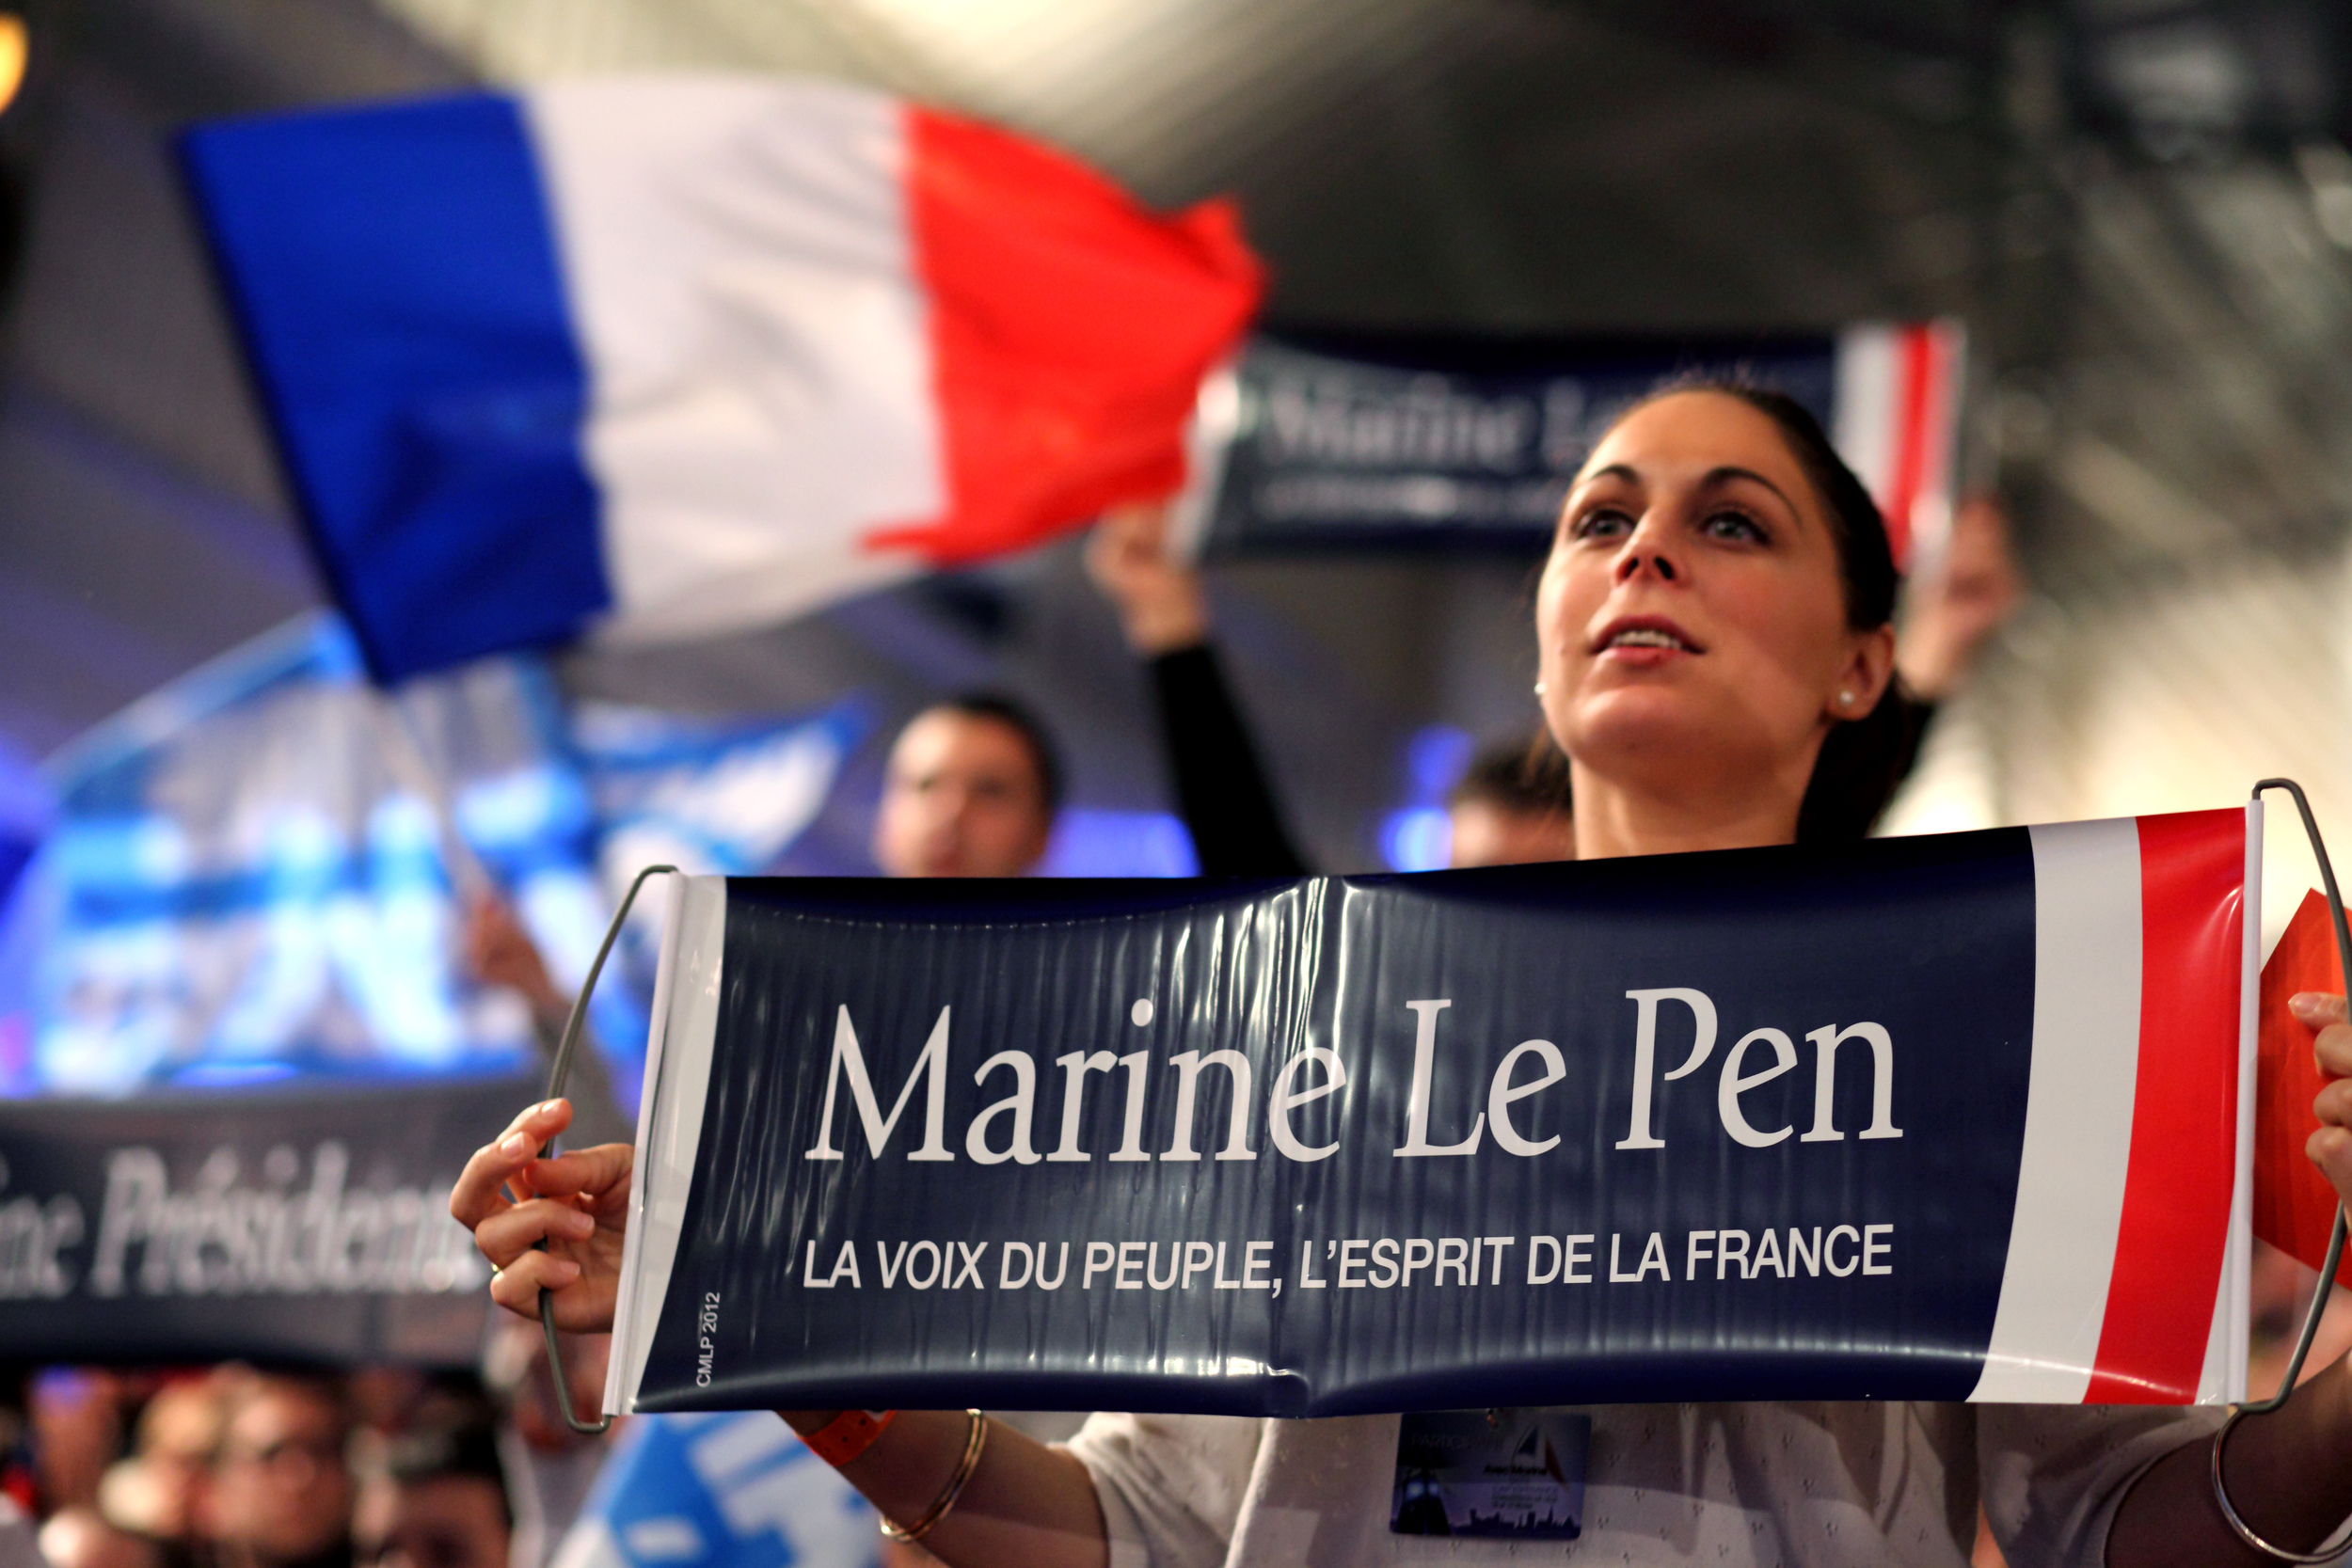  Reportage pendant les présidentielles 2012.&nbsp; Meeting de Marine Le Pen à Lille le 19 février 2012. 